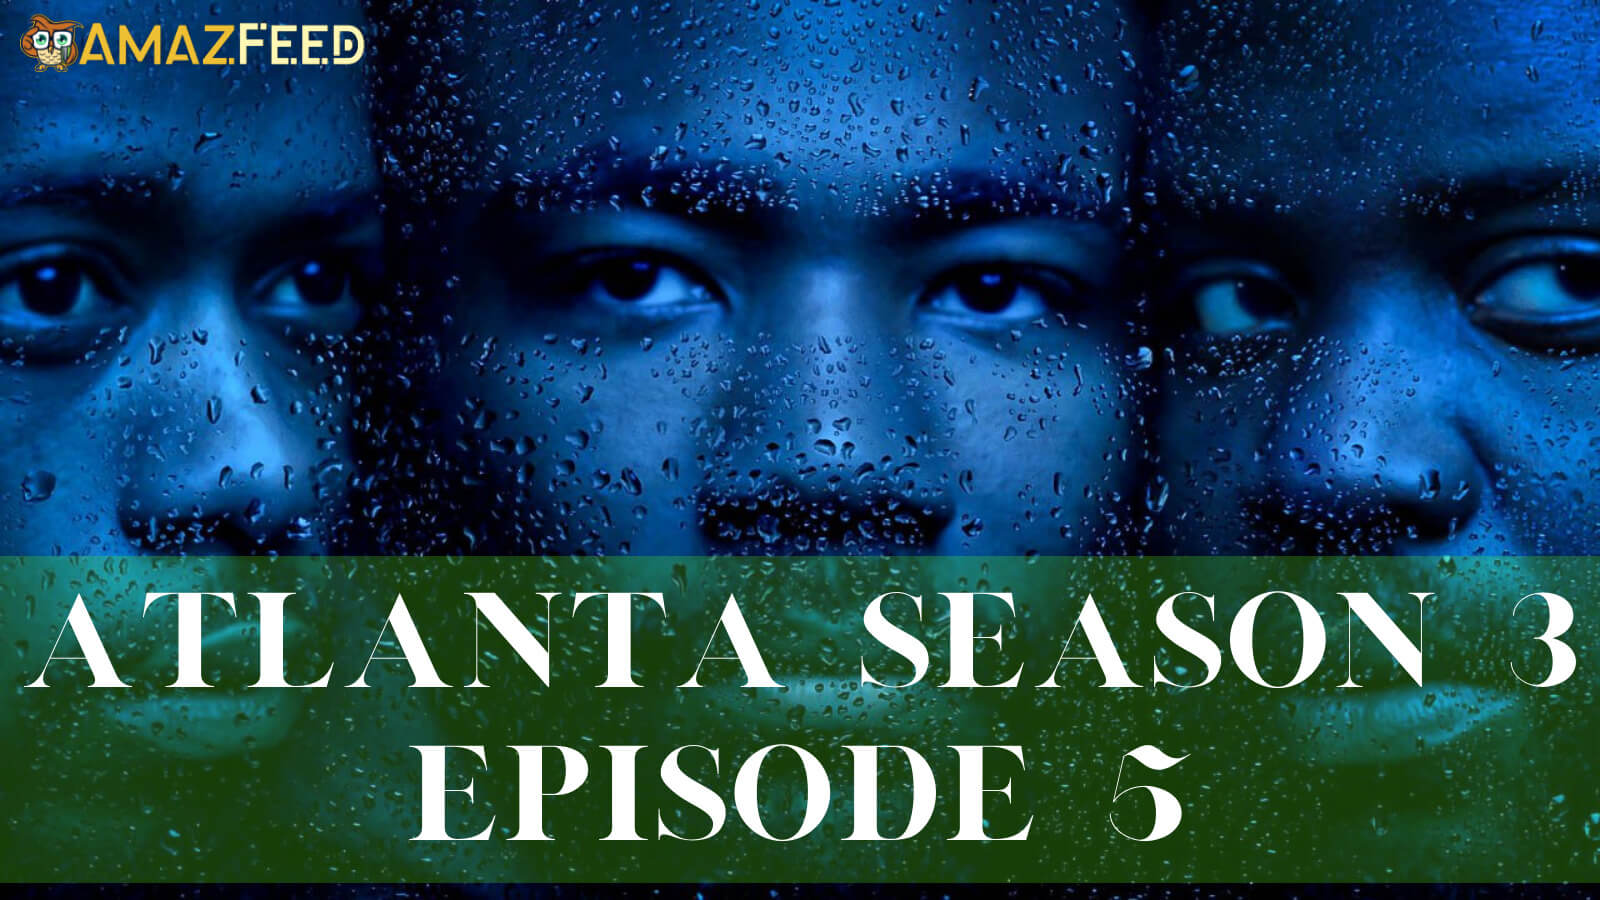 Atlanta Season 3 Episode 5 release date